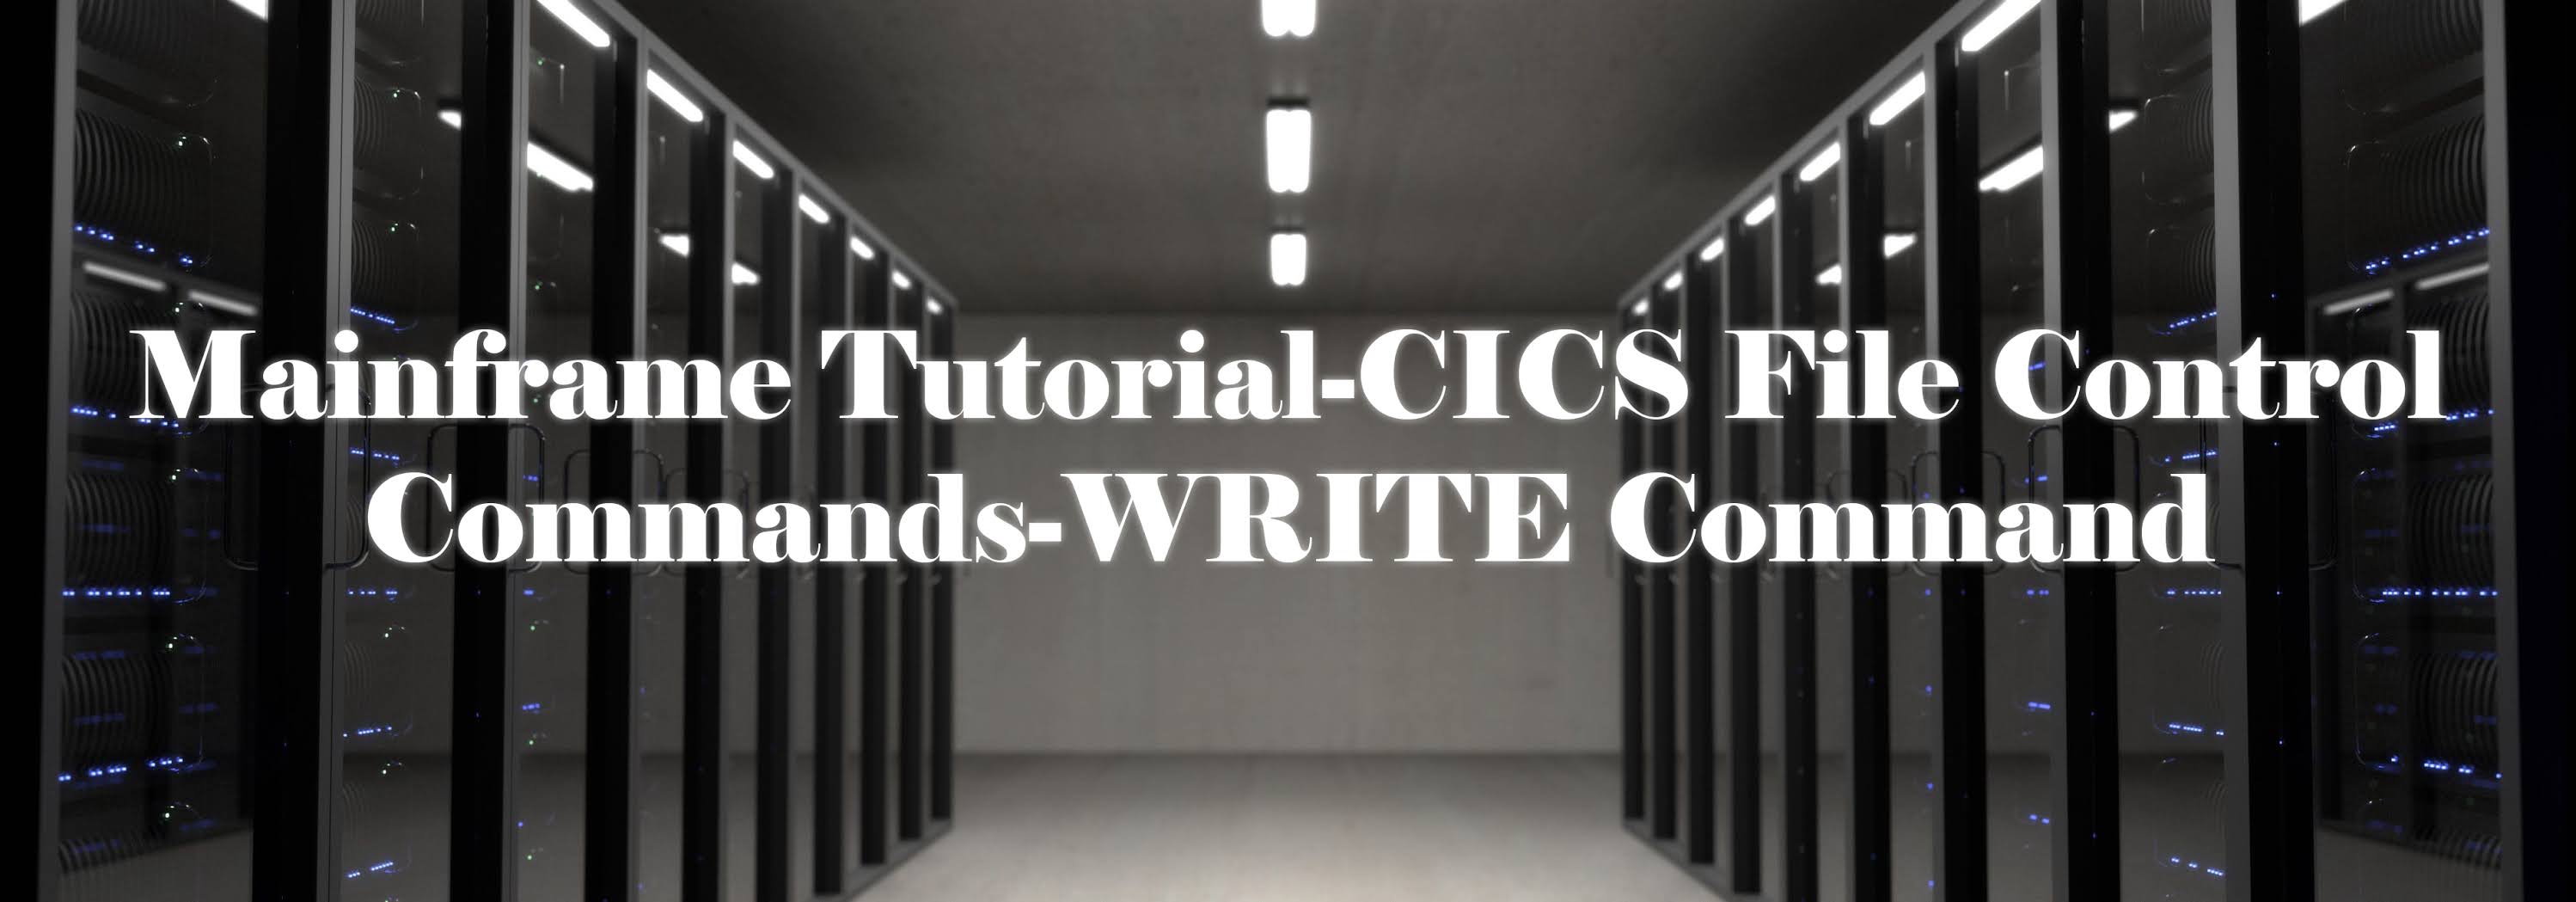 Mainframe Tutorial-CICS File Control Commands-WRITE Command